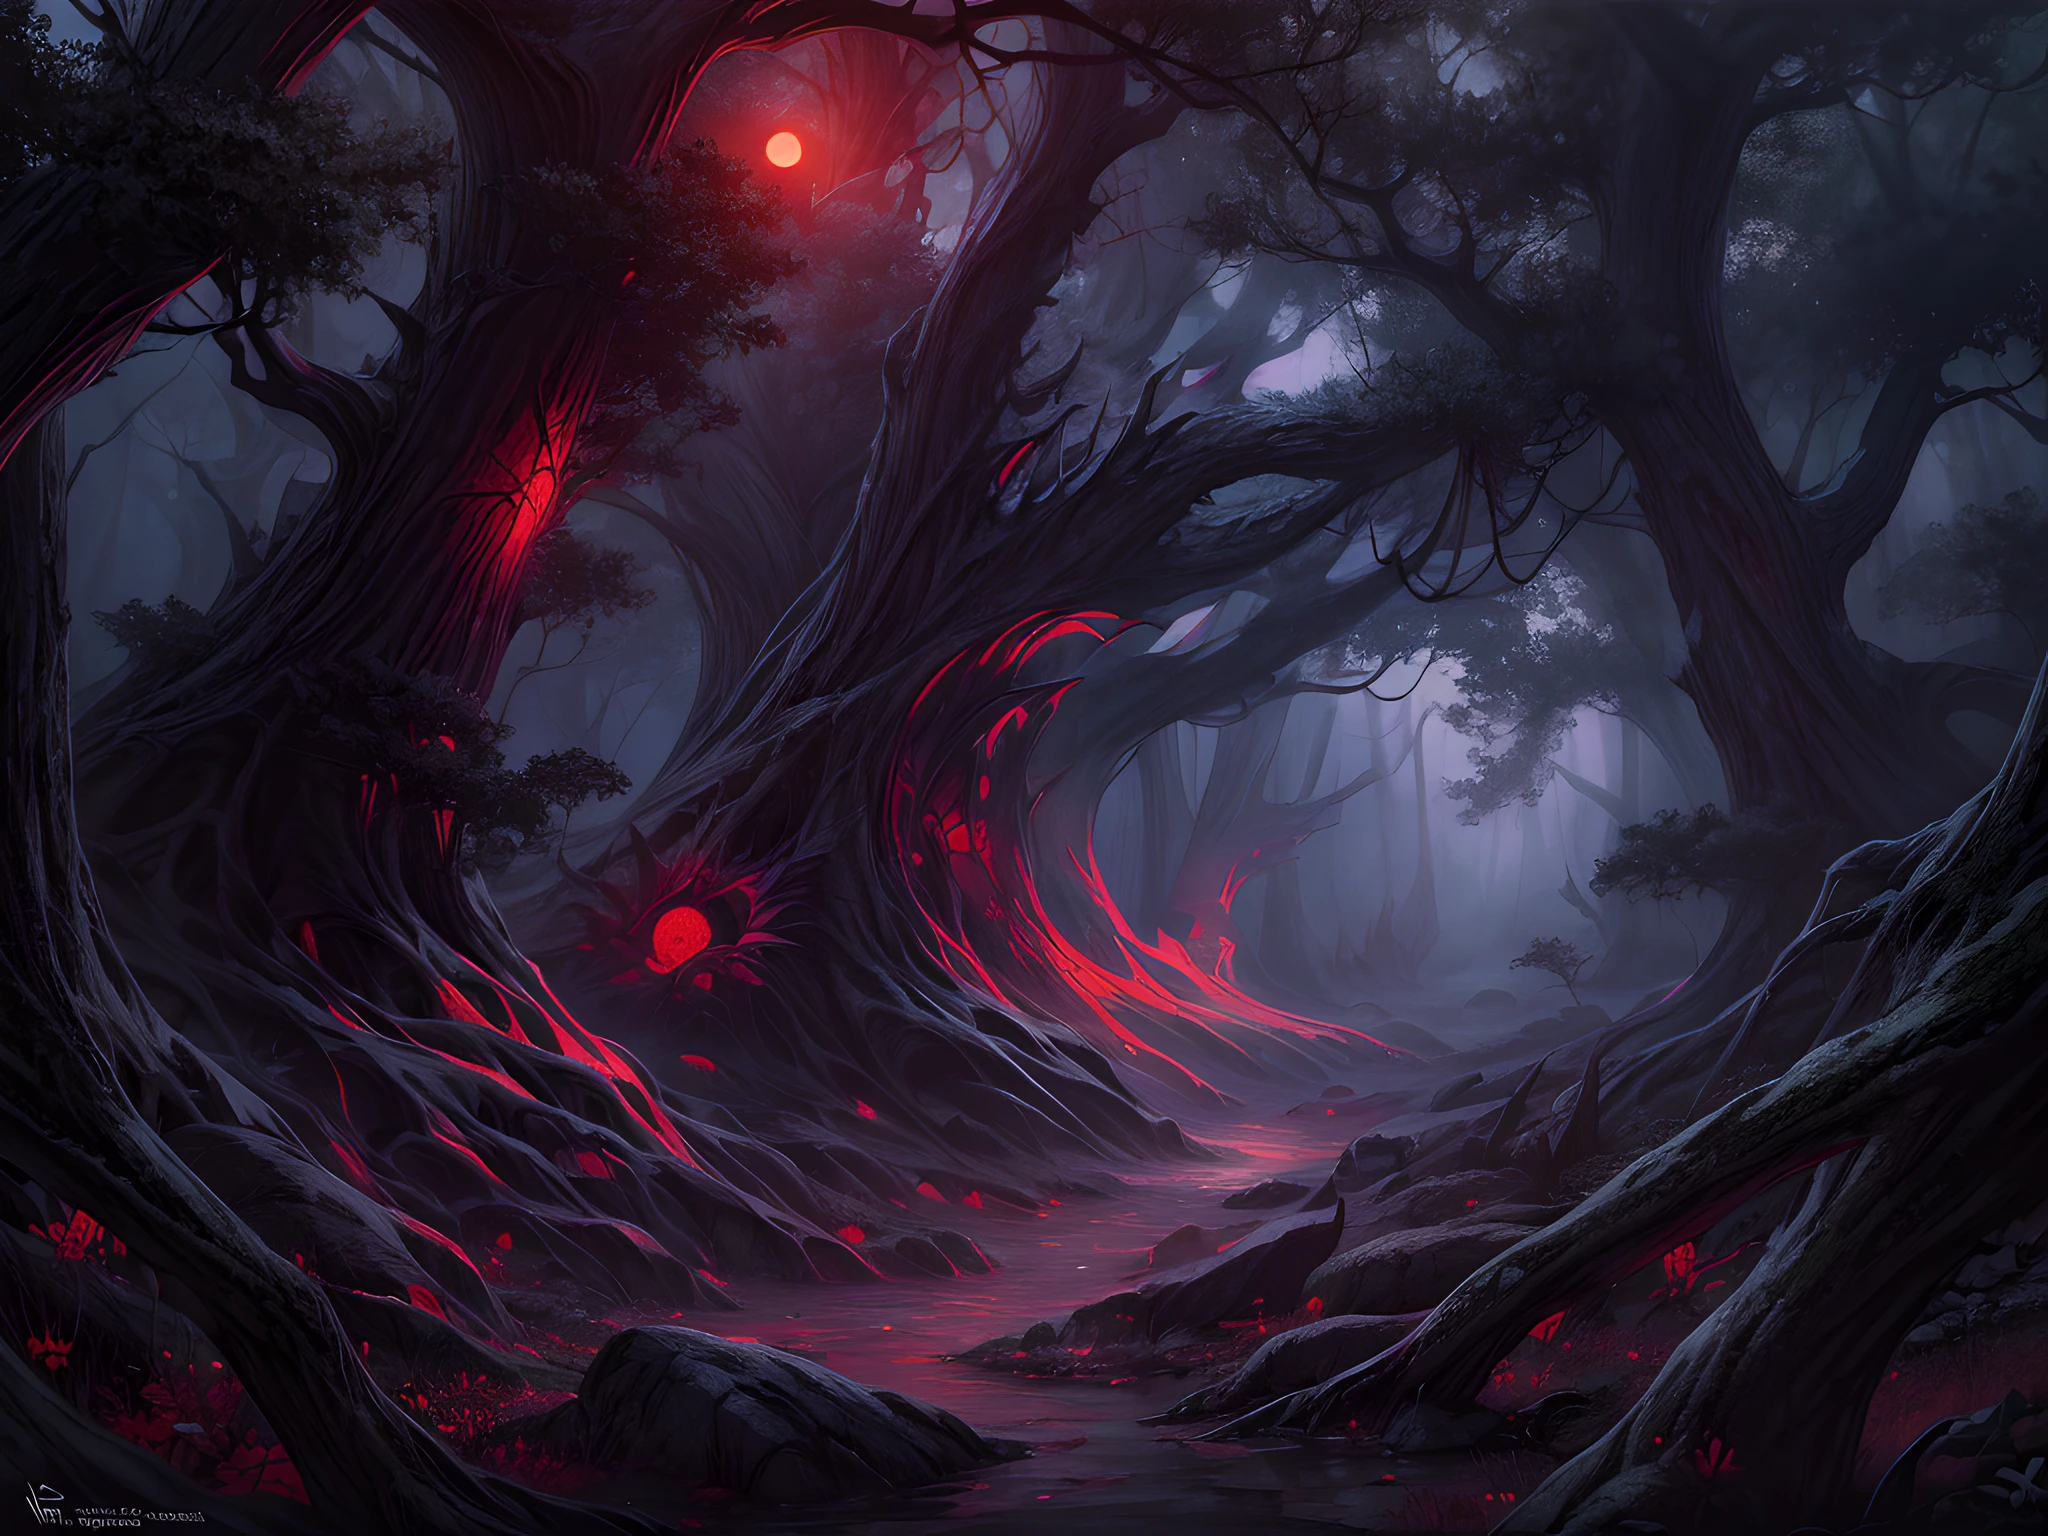 幻想藝術, RPG 艺术, 超广角拍摄, 生的, 逼真的, 黑暗奇幻森林的圖片, 薄霧從地面升起爬行薄霧, 現在是晚上, 月亮在地平線升起, 然而有一个 (一双红色的捕食者眼睛) 你看到树木之间, 黑暗奇幻森林背景, 最好的品質, 16k, [超詳細], 傑作, 最好的品質, (超詳細), 全身, 超广角拍摄, 照片寫實主義